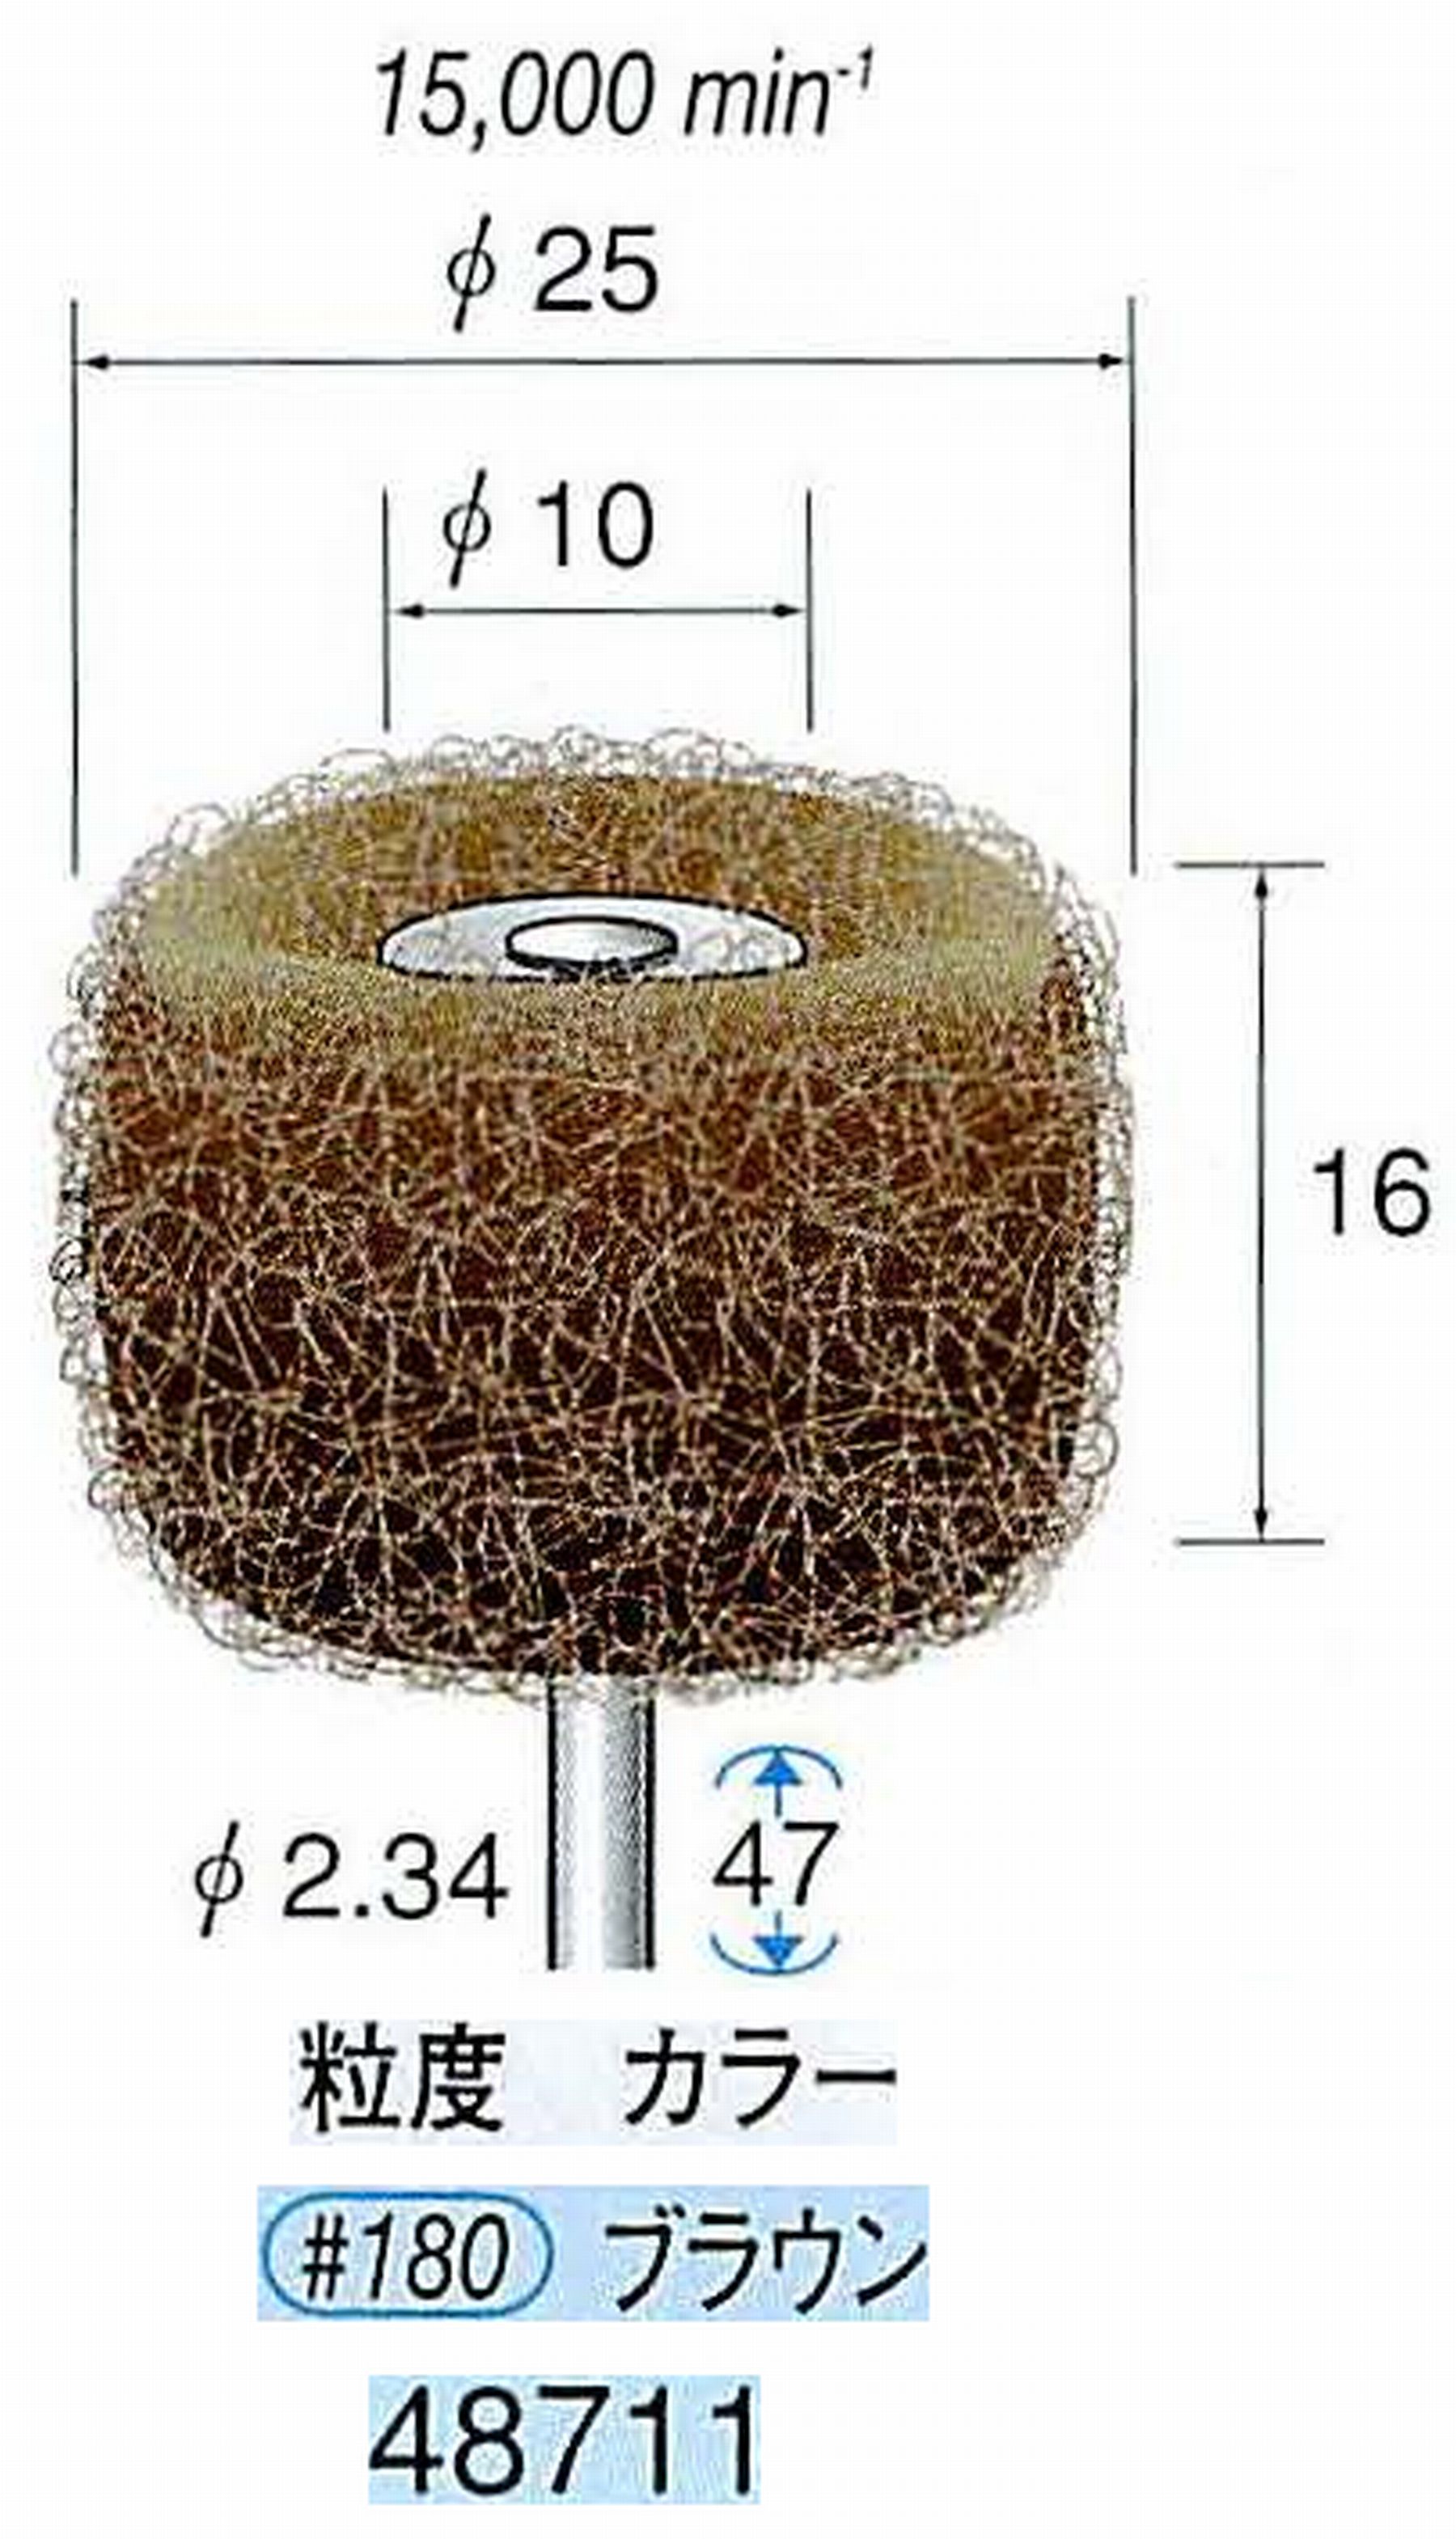 ナカニシ/NAKANISHI ファイバーサンダー(研磨砥粒入り) 軸径(シャンク)φ2.34mm 48711